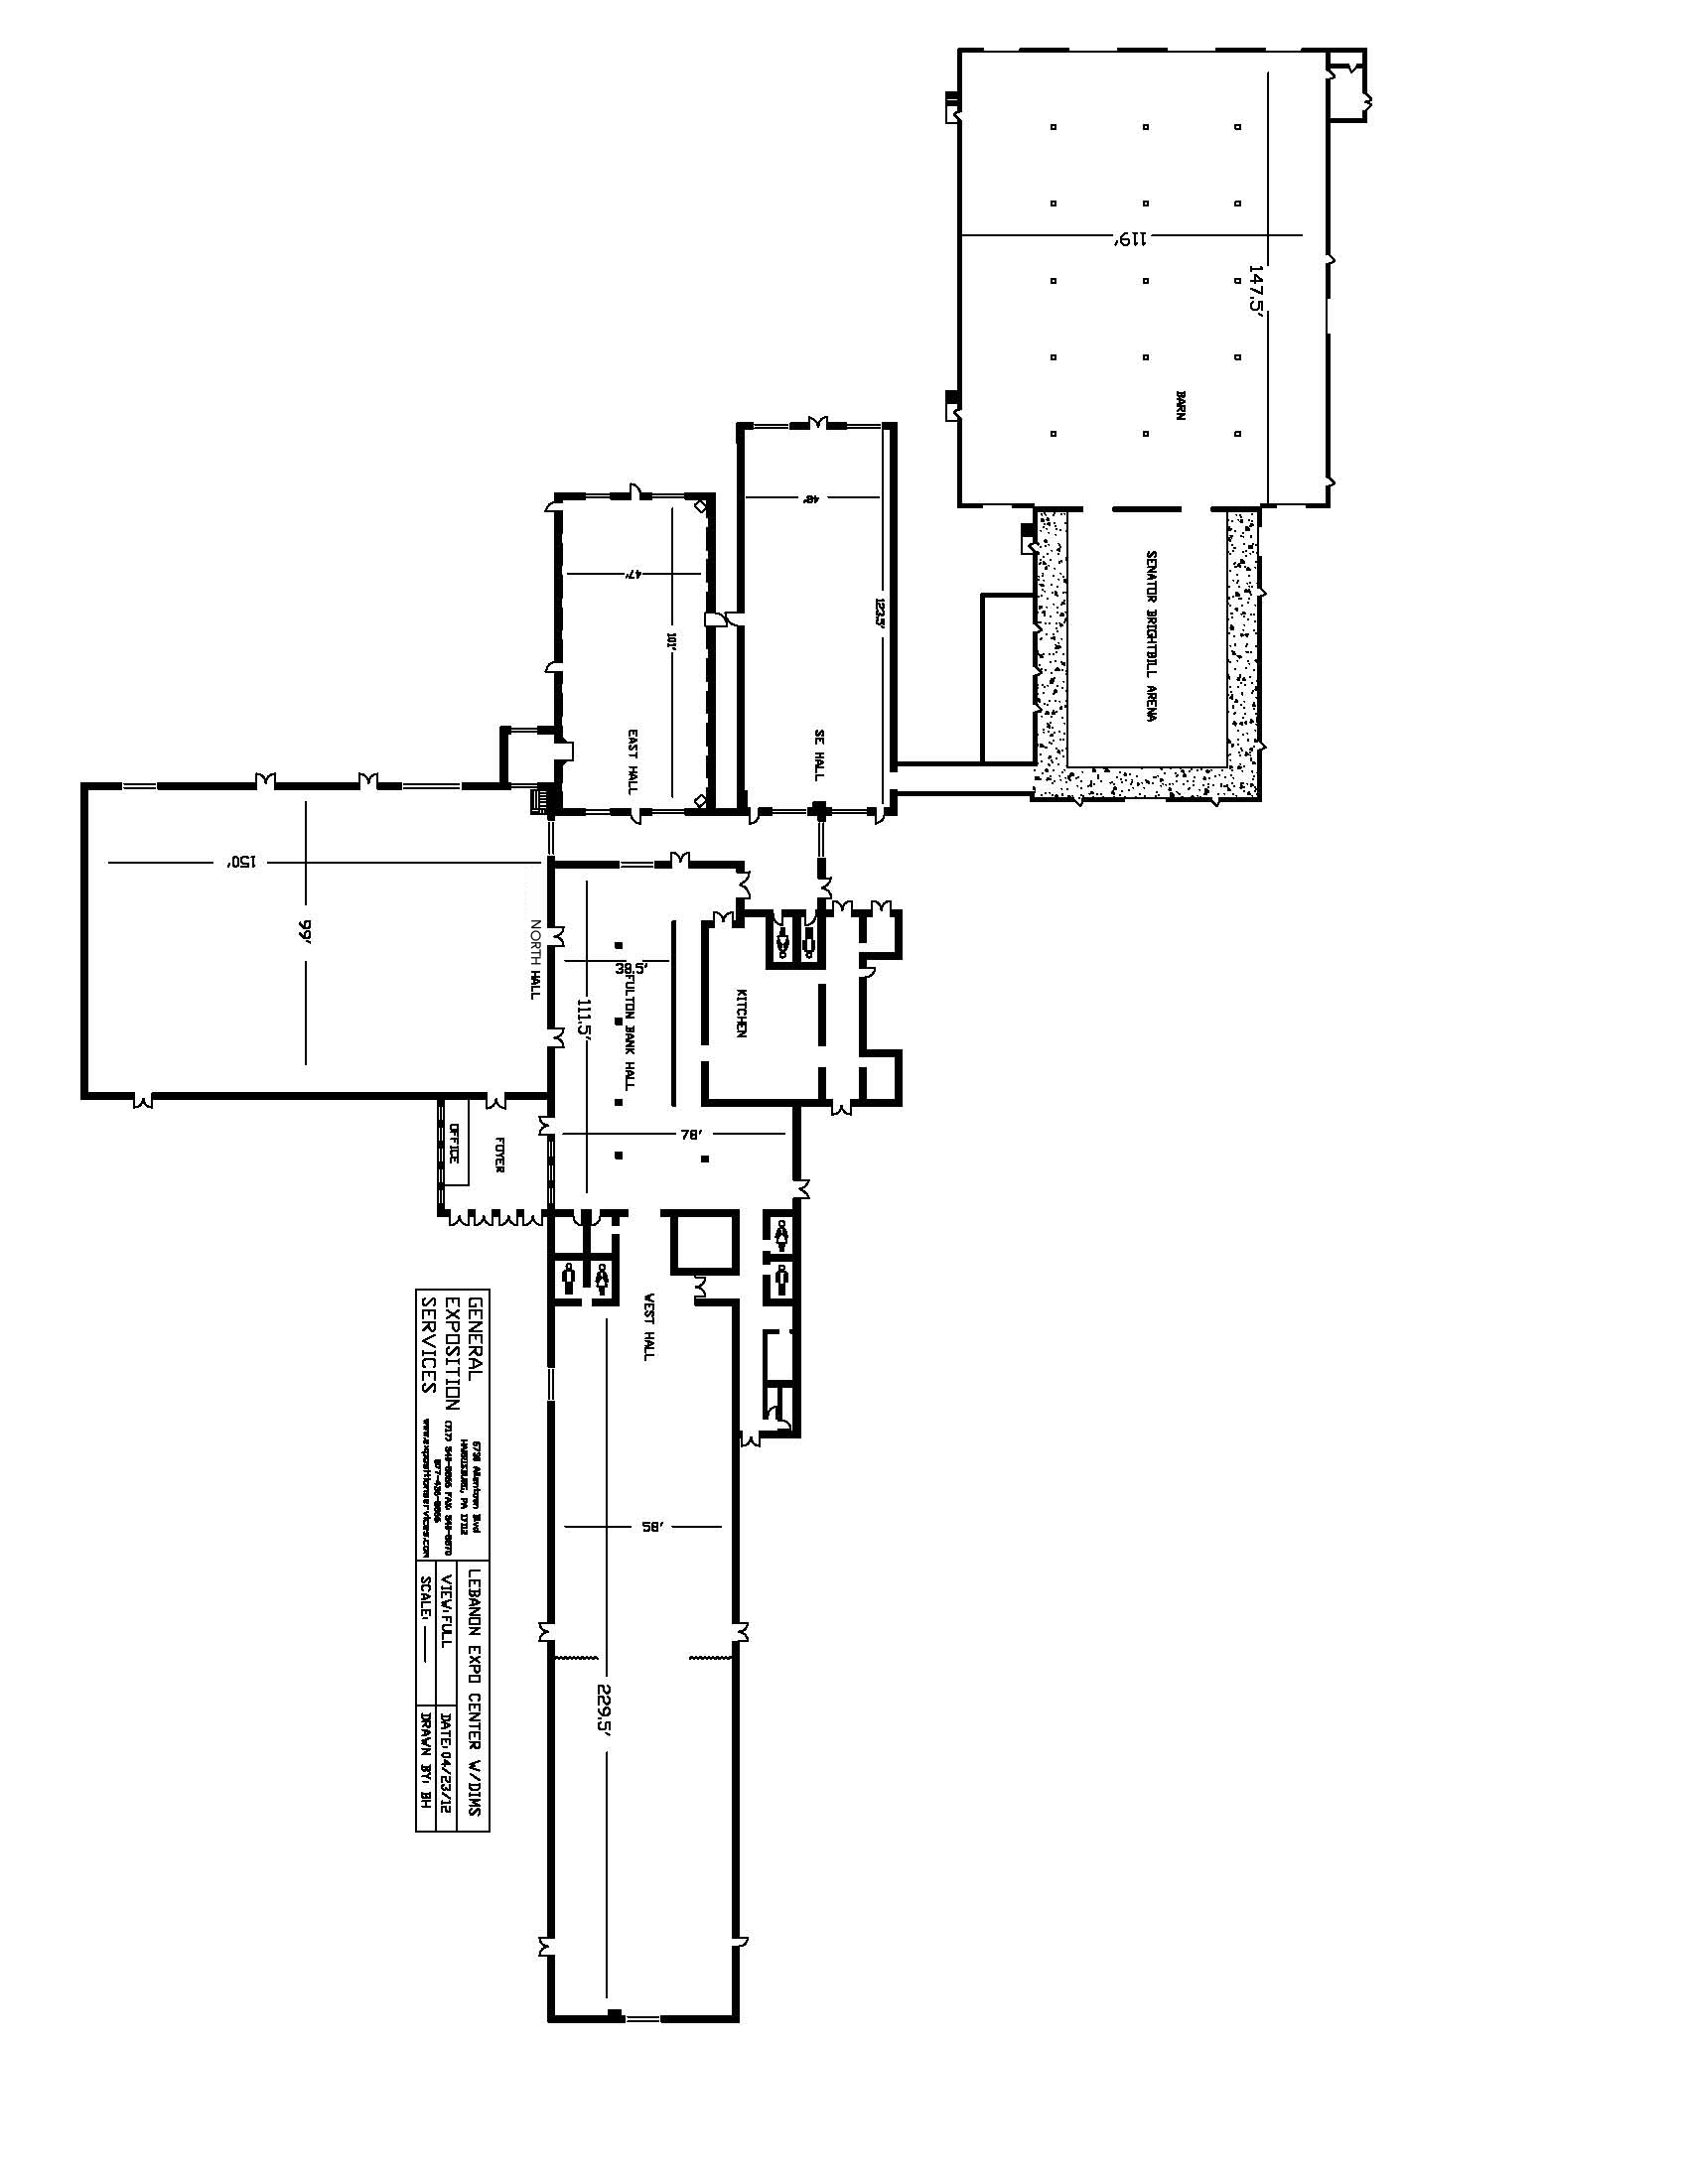 Enclosed Buildings - Complete Floor Plan